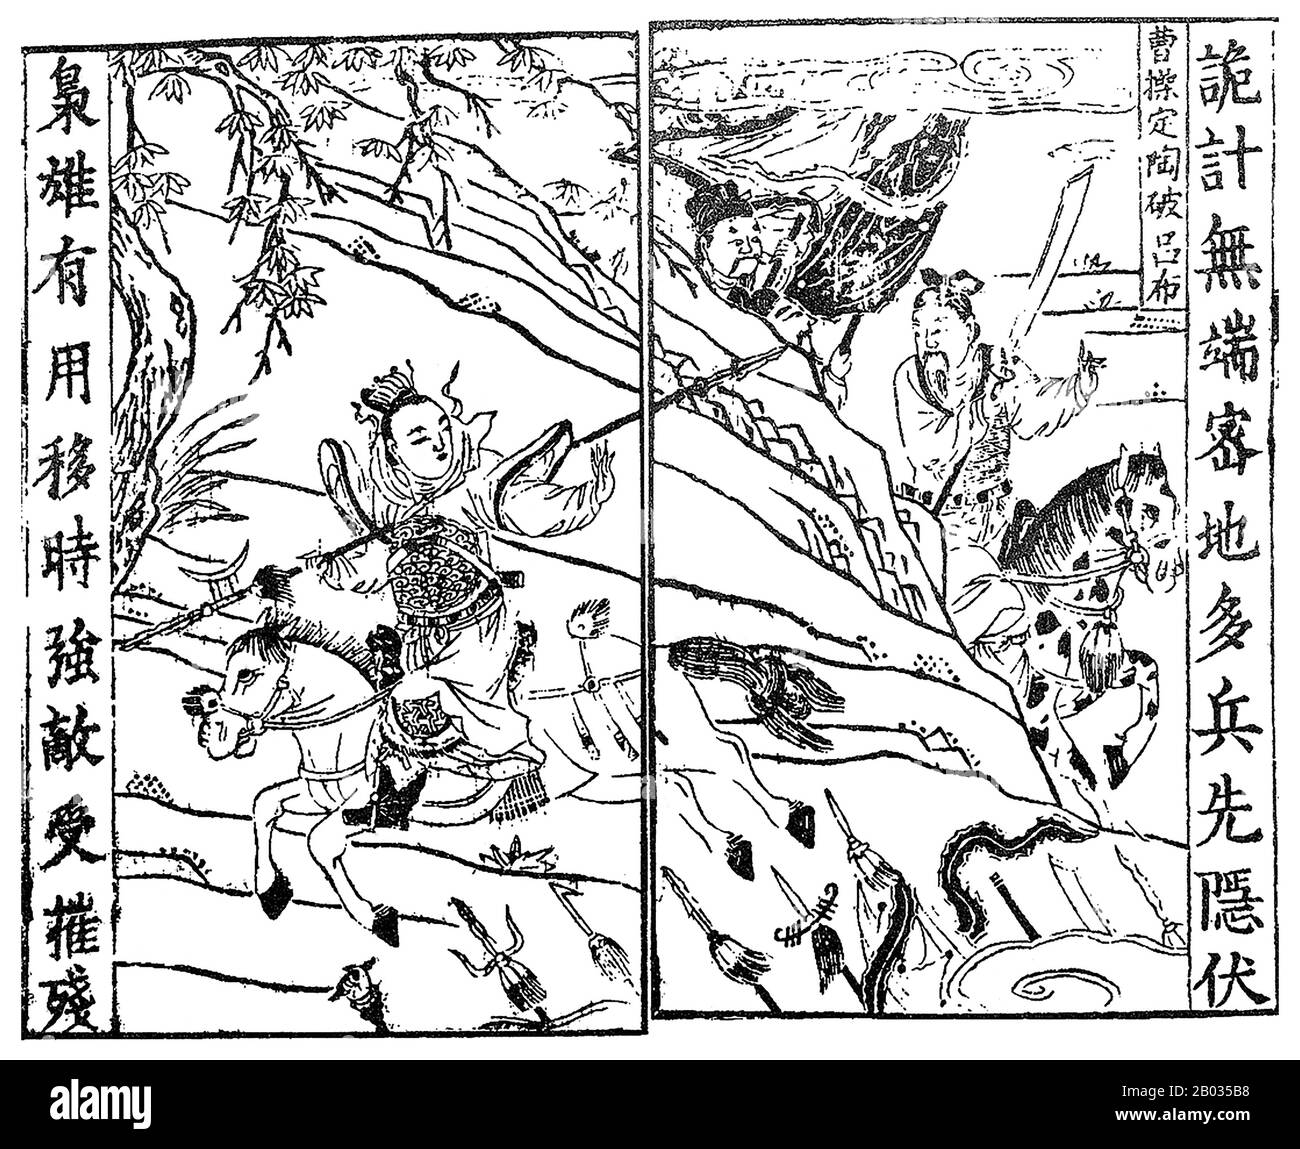 Cao Cao (155-15. März 220 CE), Höflichkeitsname Mengde, war einer der wichtigsten Warlords während der Zeit der Baumkönigreiche. Cao, der vorletzte Kanzler der östlichen Han-Dynastie, stieg in den letzten Jahren der Dynastie zur Großmacht auf. Als die östliche Han-Dynastie fiel, konnte Cao Cao die größten und wohlhabendsten Städte der zentralen Ebenen Nordchinas sichern und sich unter seiner Herrschaft vereinen. Während der Zeit Der Drei Reiche legte er den Grundstein für das, was zum Staat Cao Wei werden würde, das posthum mit dem Titel "Kaiser Wu von Wei" geehrt wurde. Obwohl er sehr erfolgreich war Stockfoto